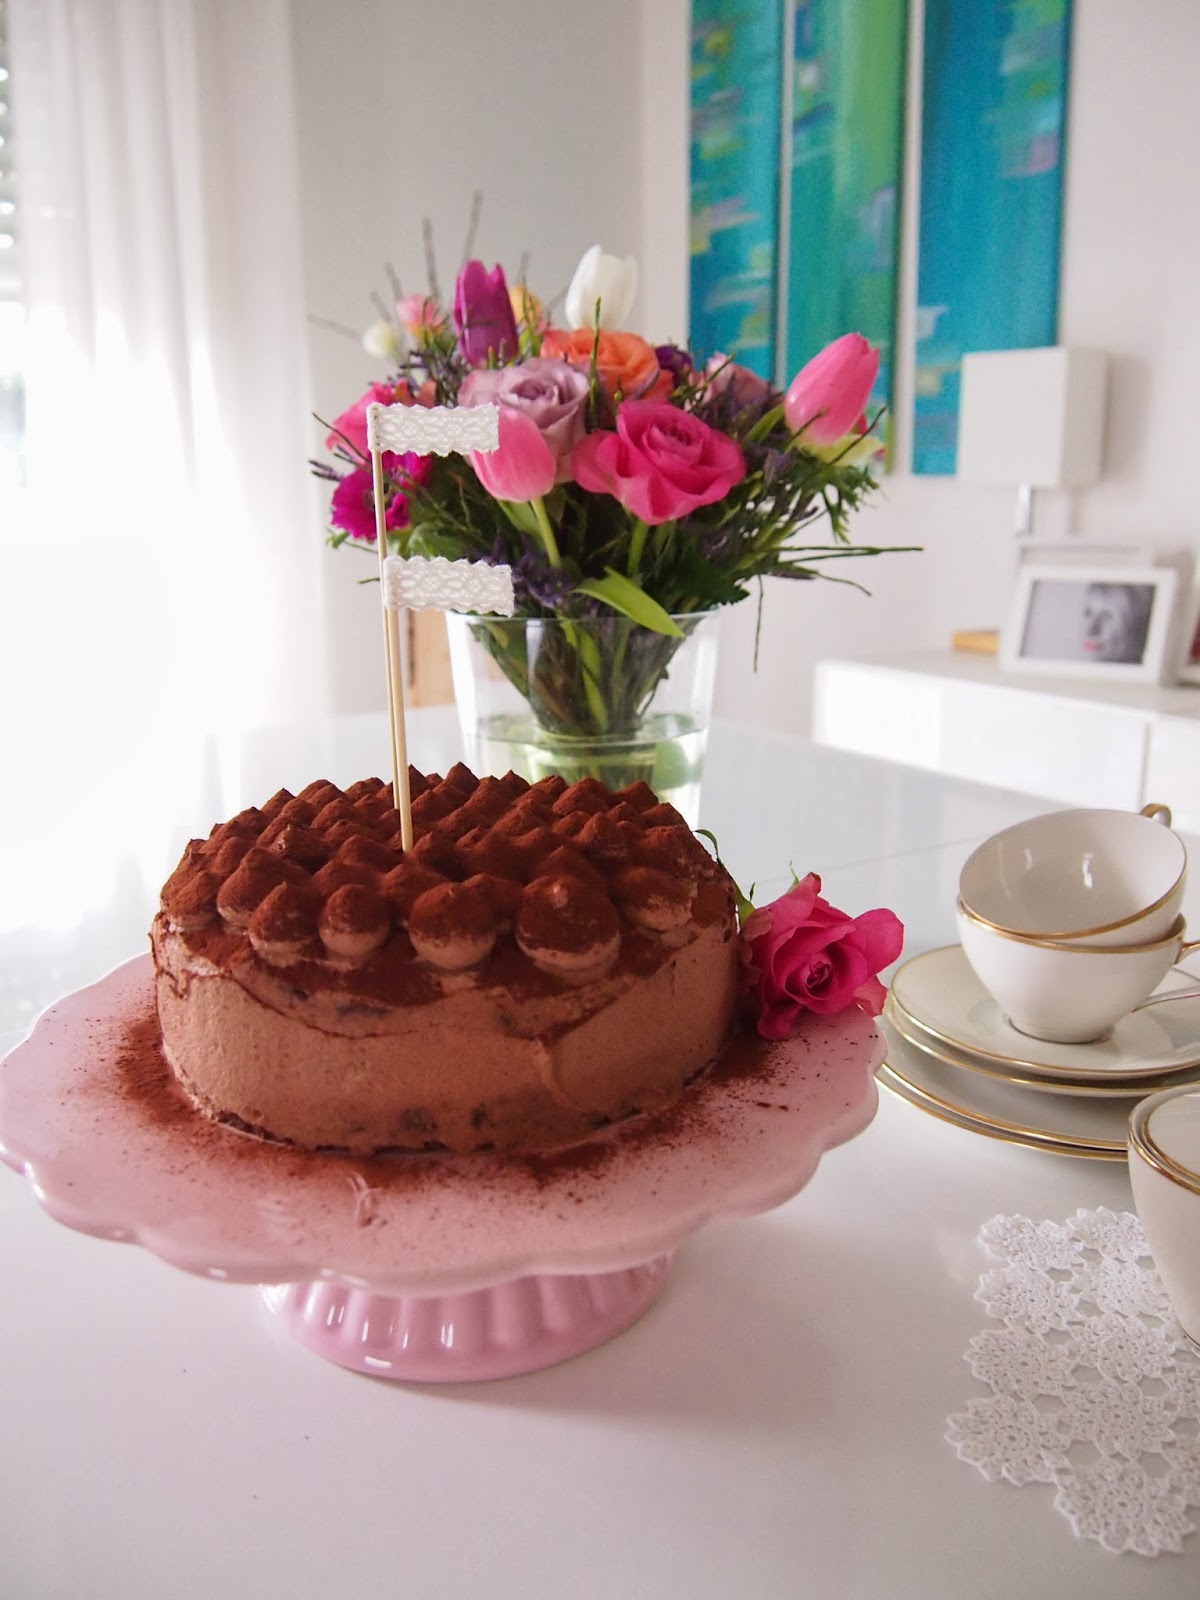 dieZuckerbäckerei: Mokka-Schokoladen-Torte